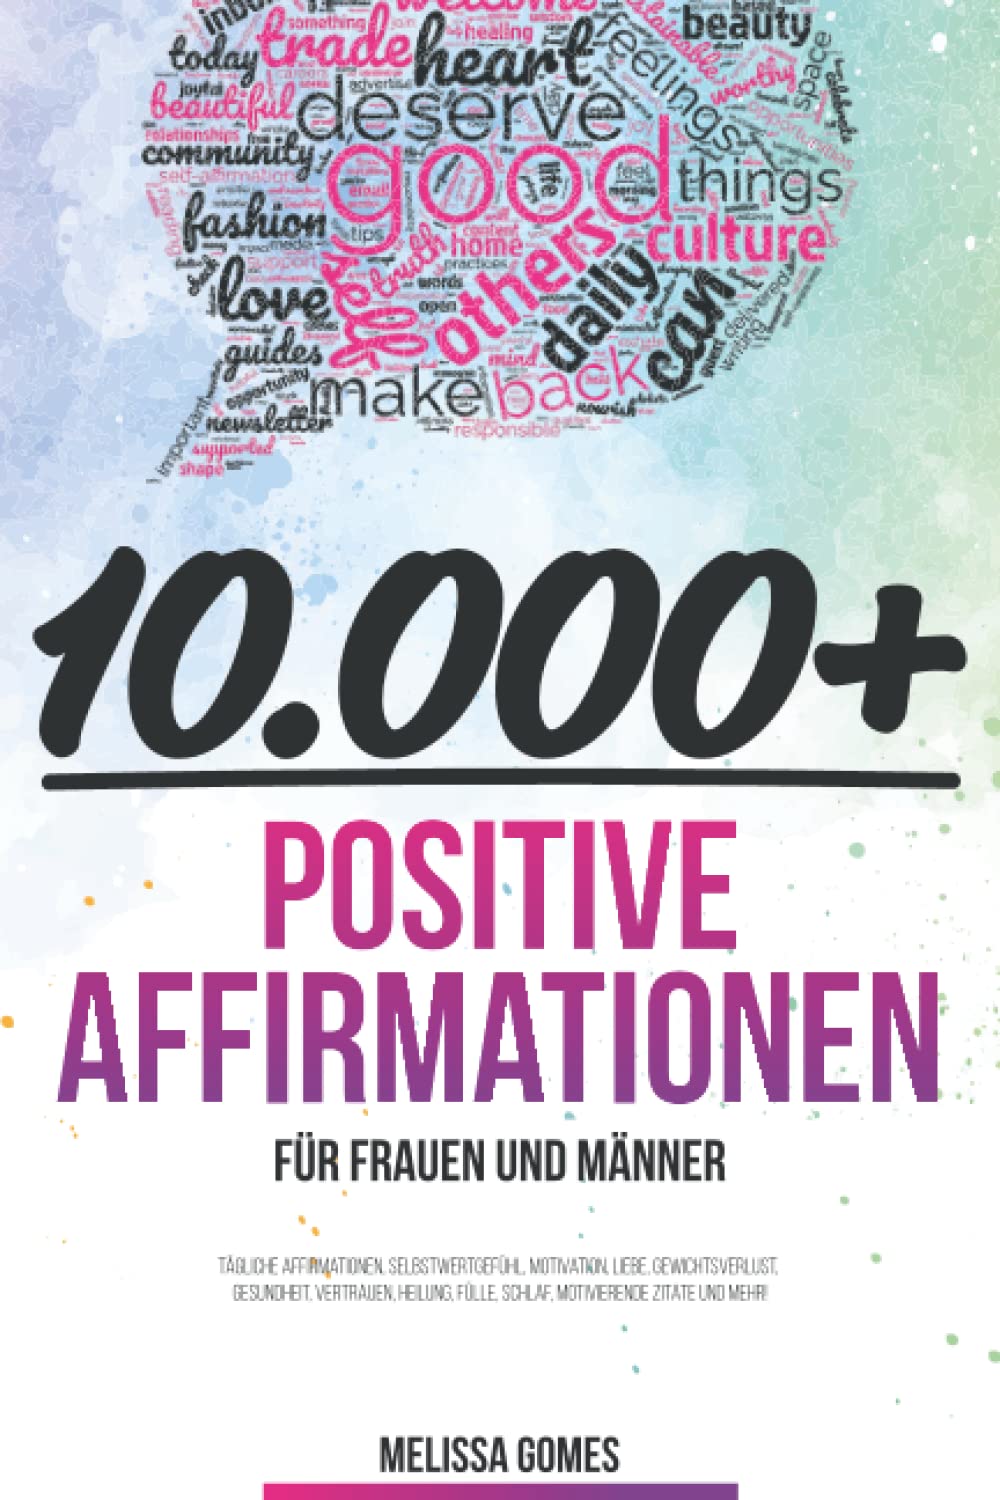 10.000+ Positive Affirmationen Für Frauen Und Männer: Tägliche Affirmationen